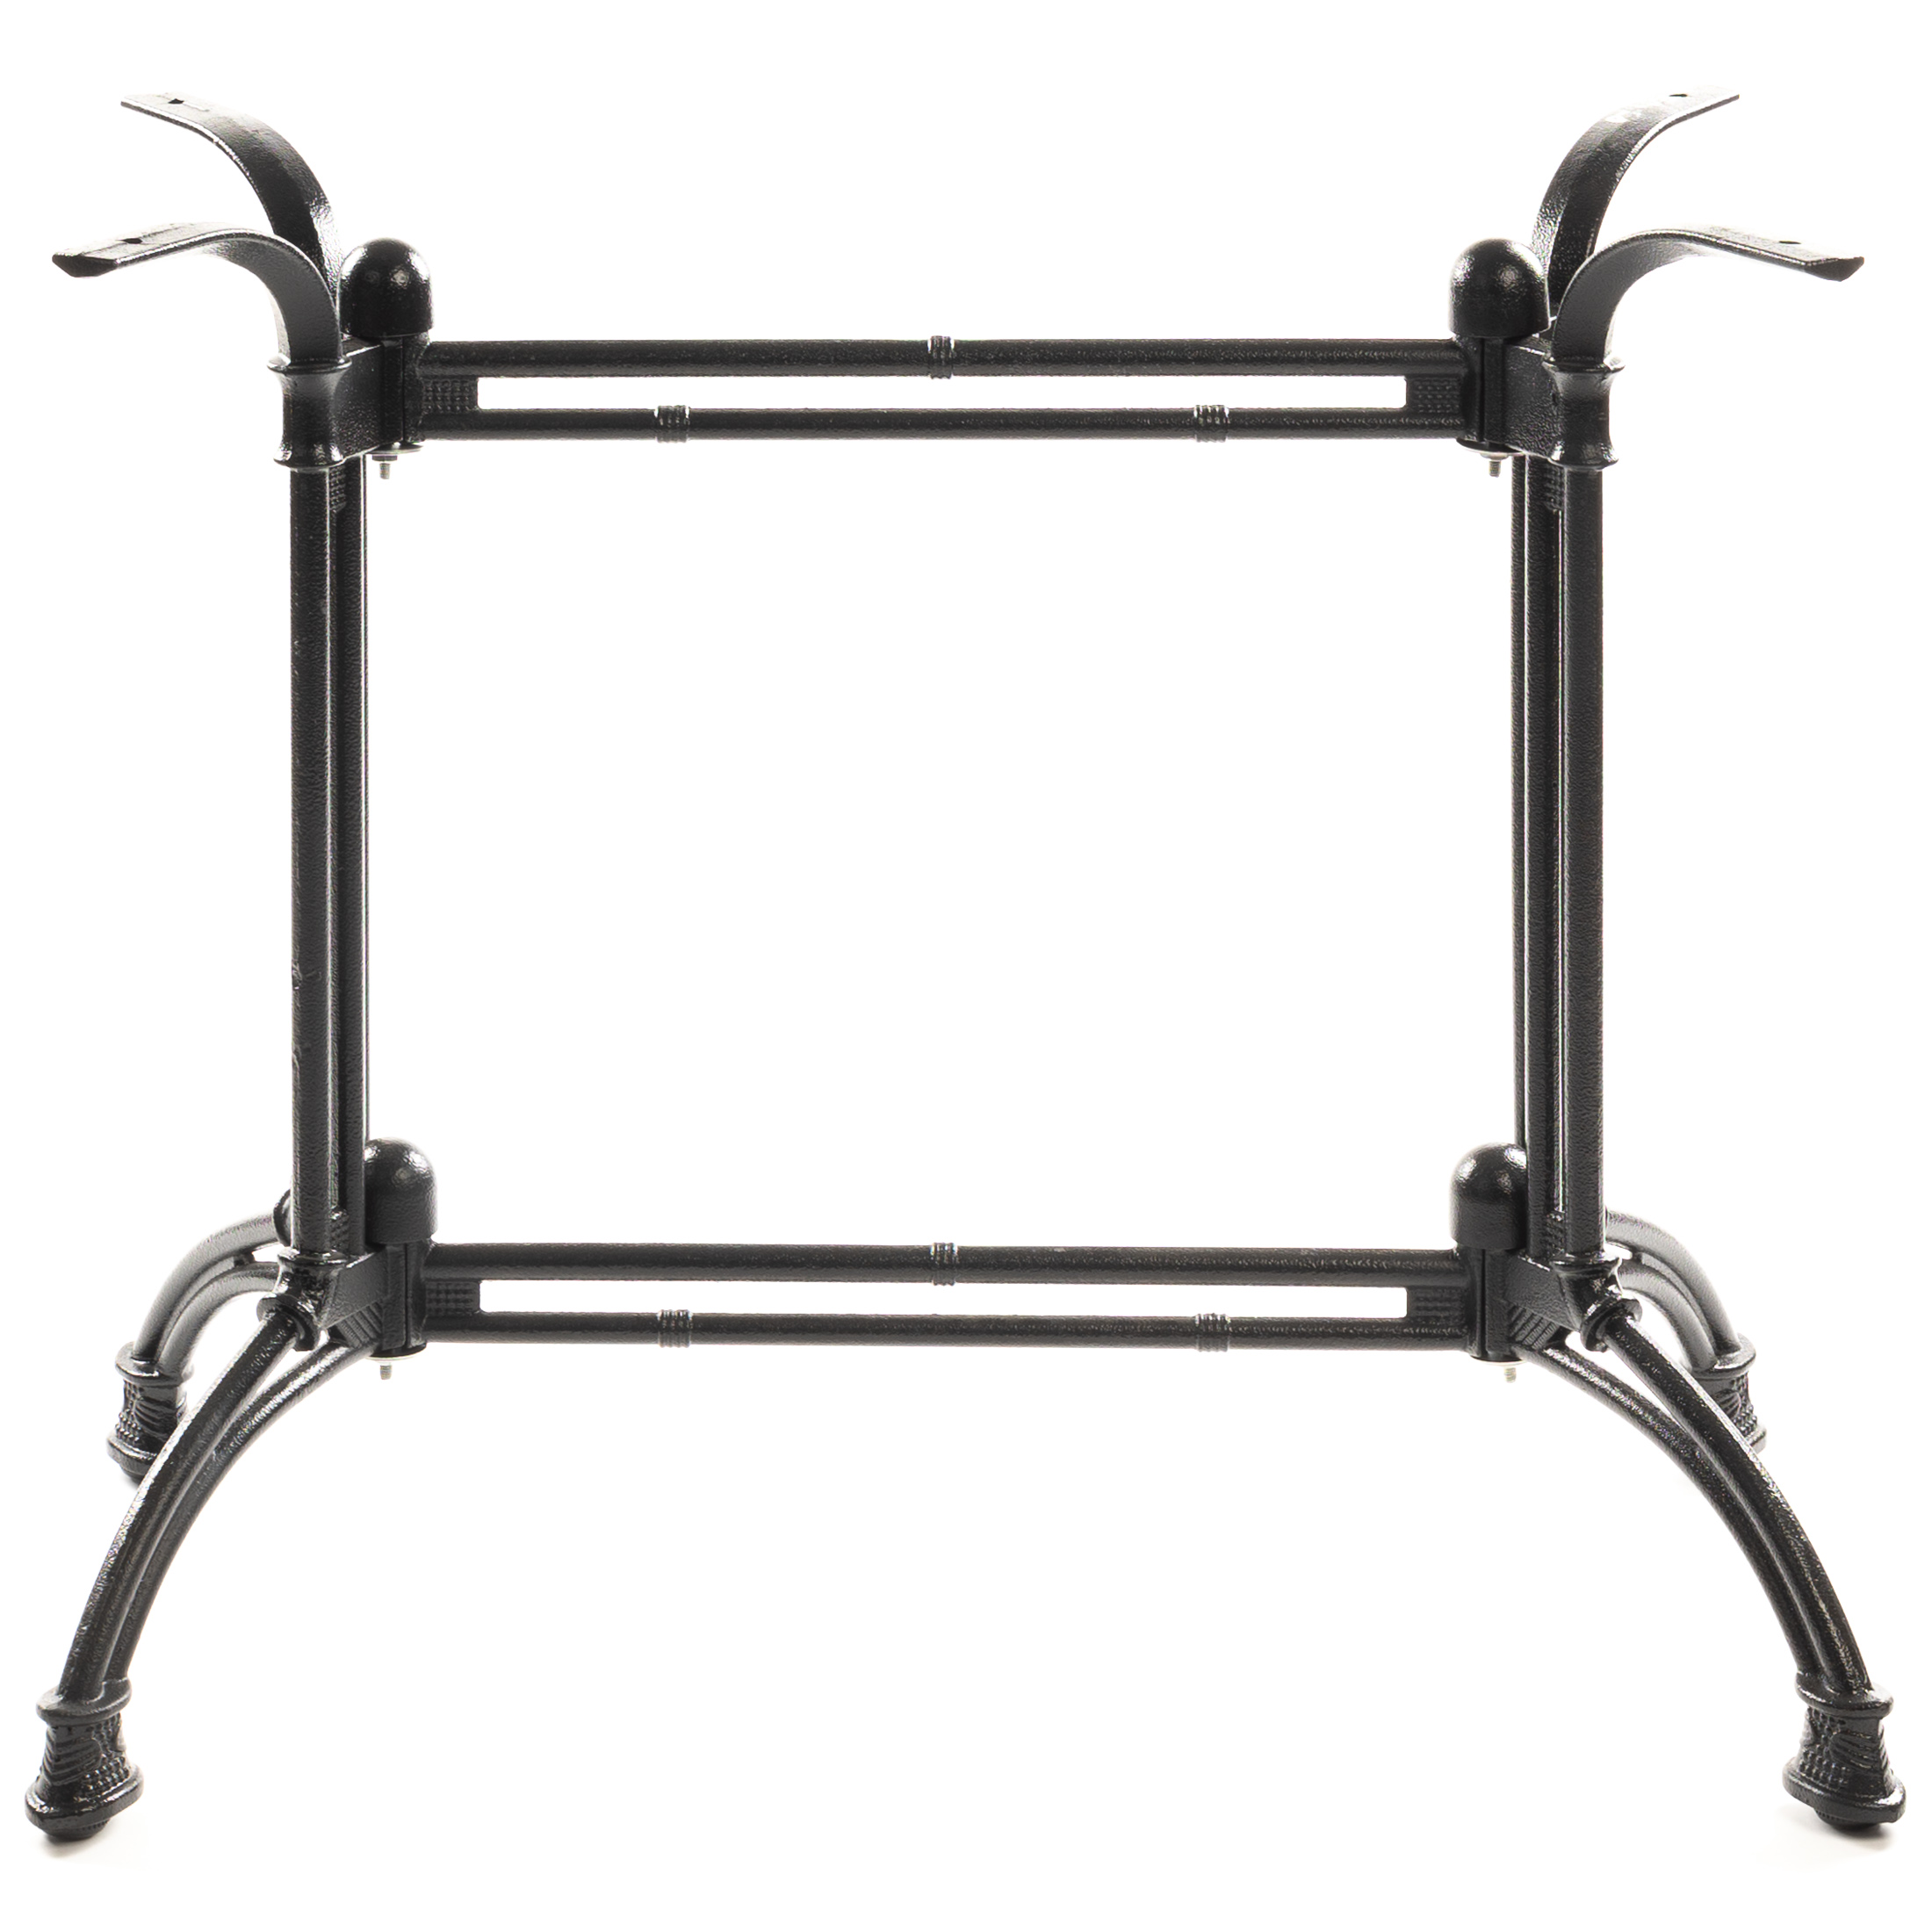 Premium Tischgestell PJ7021 aus Gusseisen, schwarz, elegant